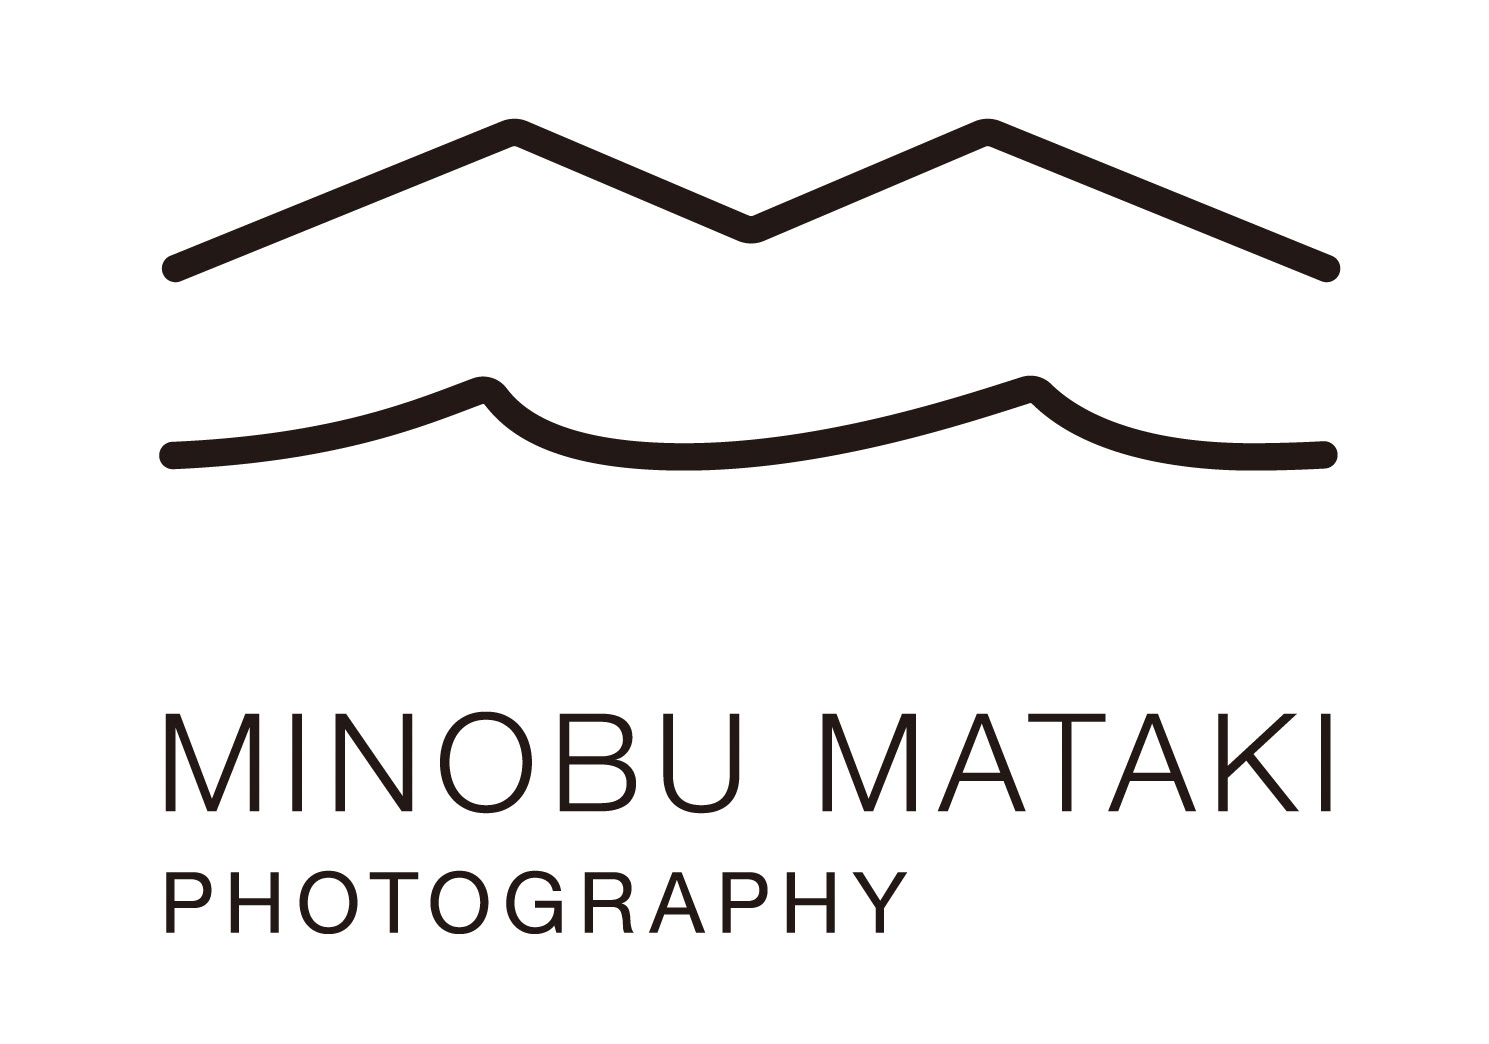 MINOBU MATAKI PHOTOGRAPHY